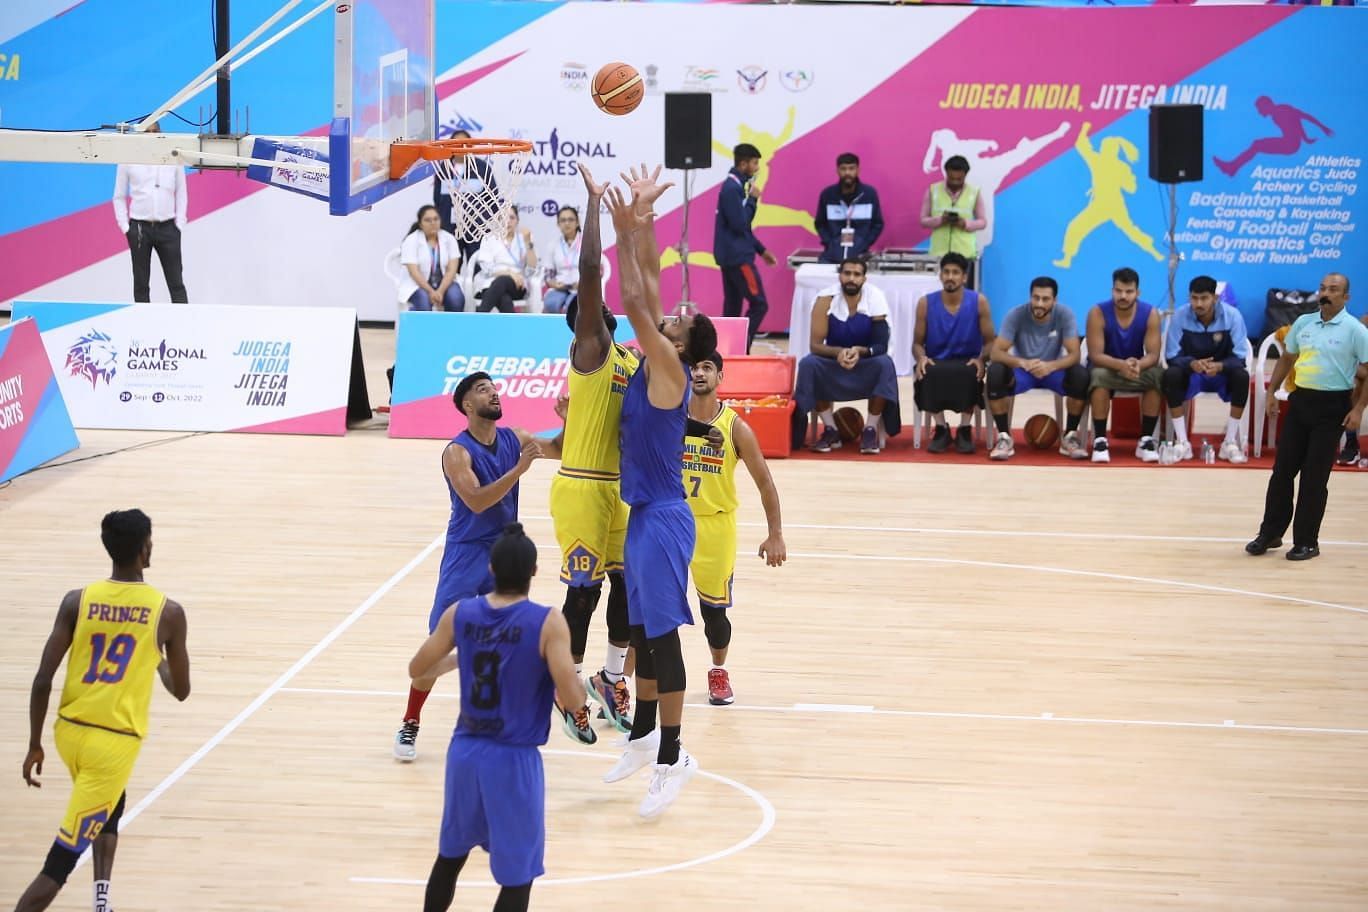 पुरुष बास्केटबॉल फाइनल में भिड़तीं तमिलनाडु (पीली जर्सी) और पंजाब की टीमें।